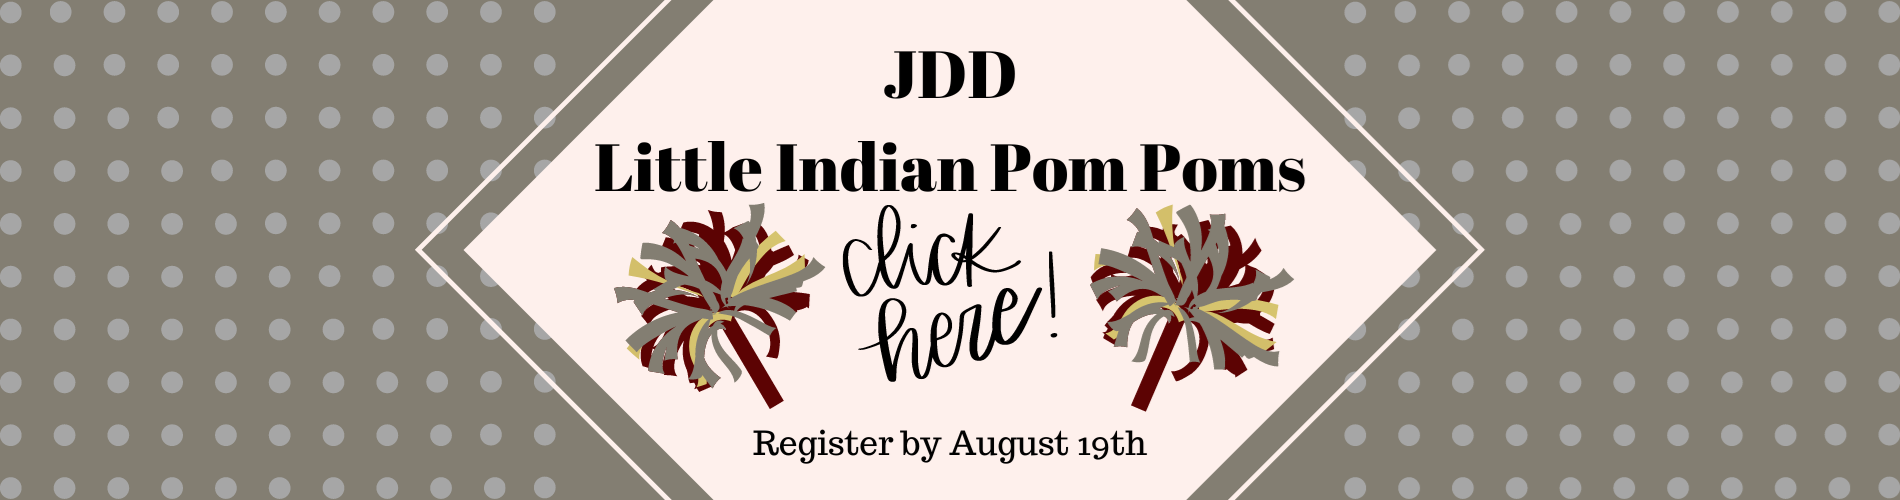 JDD Pom Poms Registration